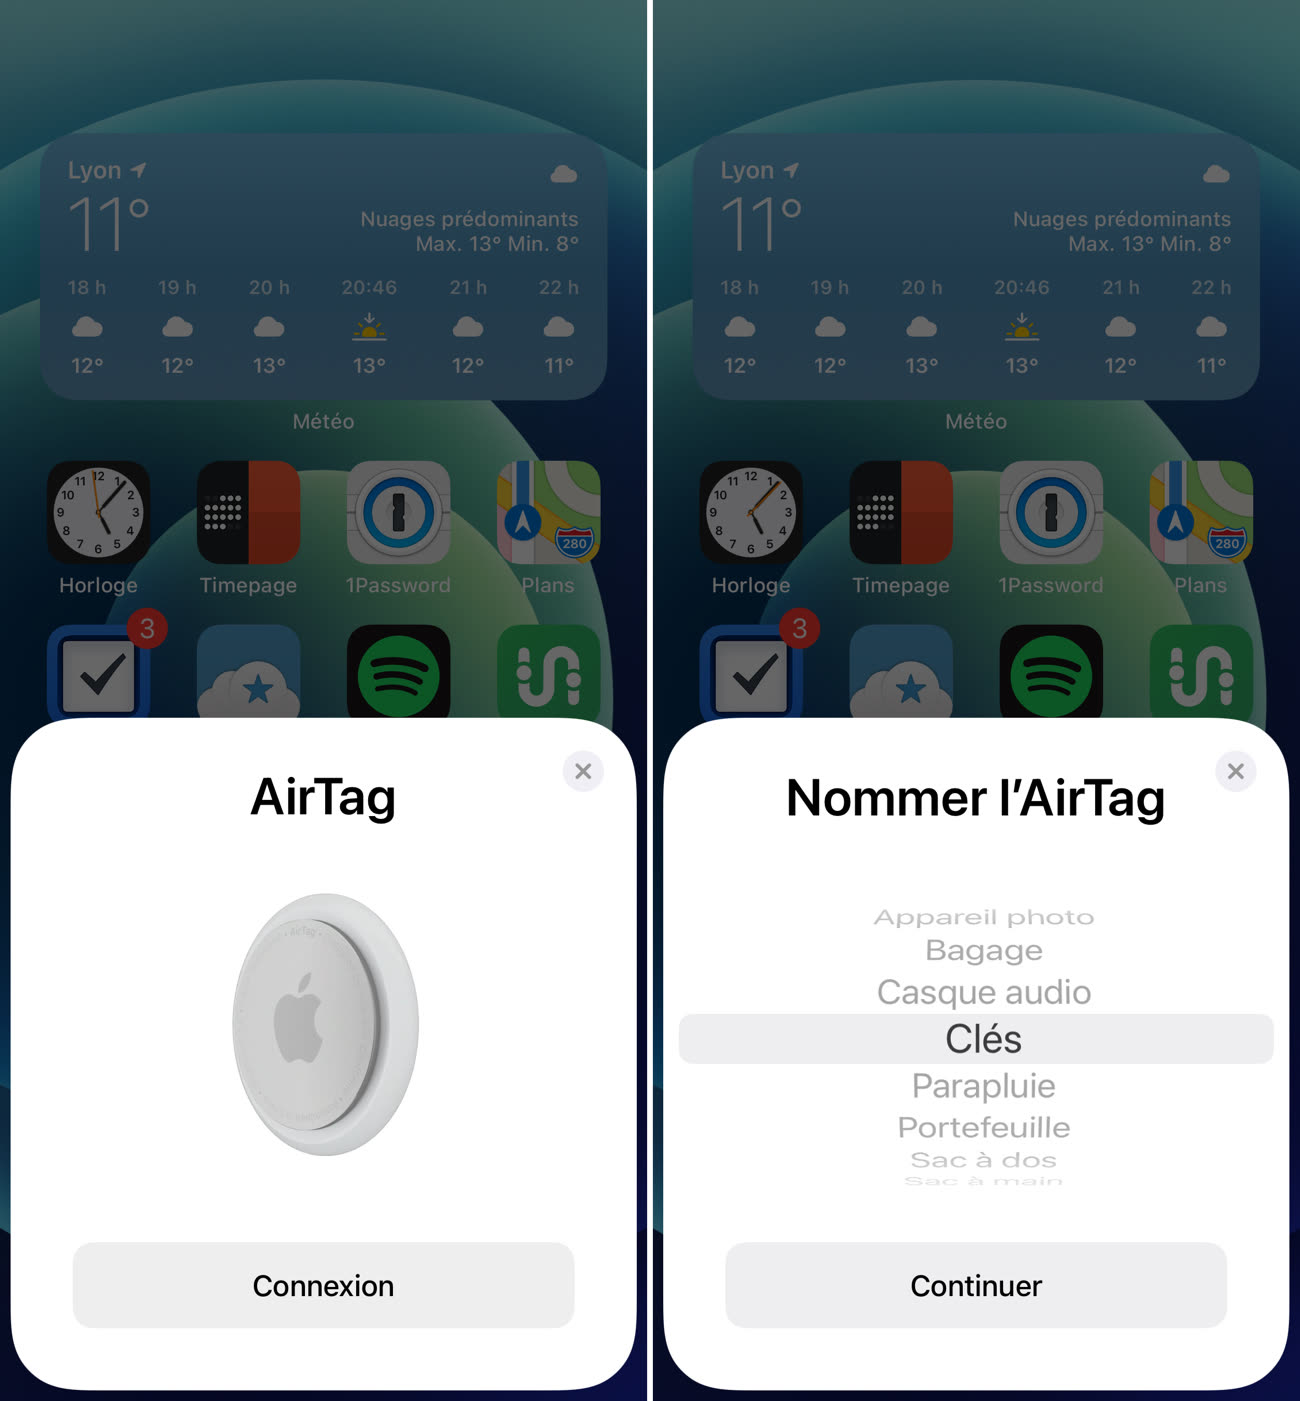 Votre smartphone Android peut maintenant détecter les AirTags suspects